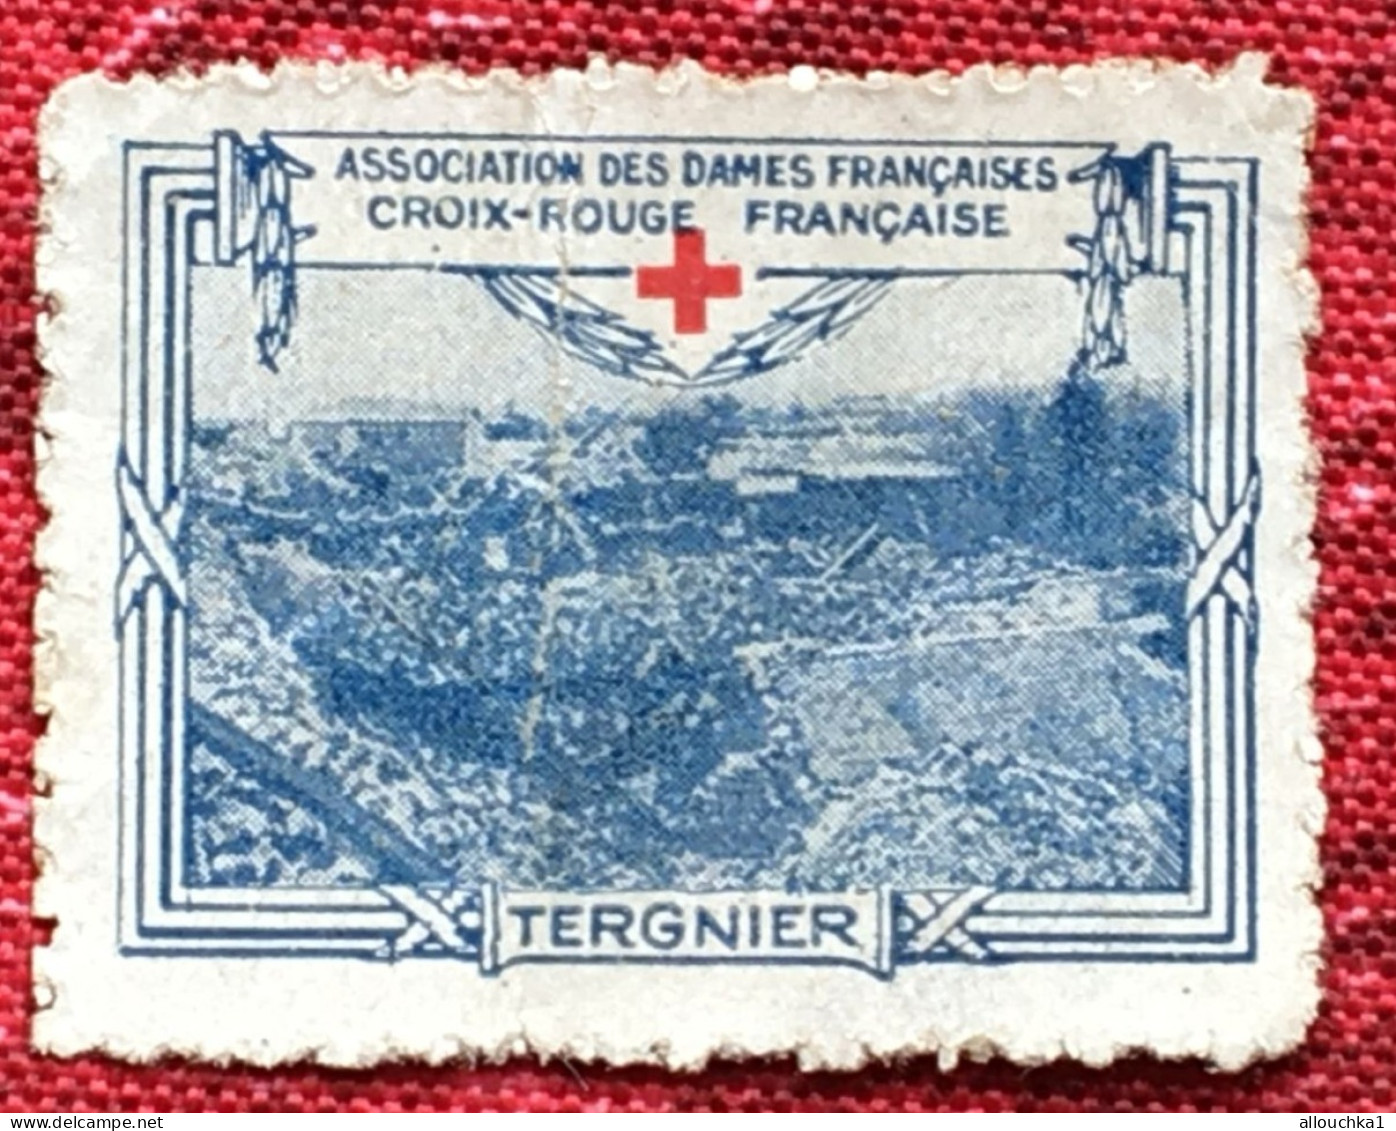 Croix Rouge Française Association Dames Françaises Tergnier -Red Cross-Timbre-Vignette-Erinnophilie-Stamp-Sticker-Viñeta - Croce Rossa